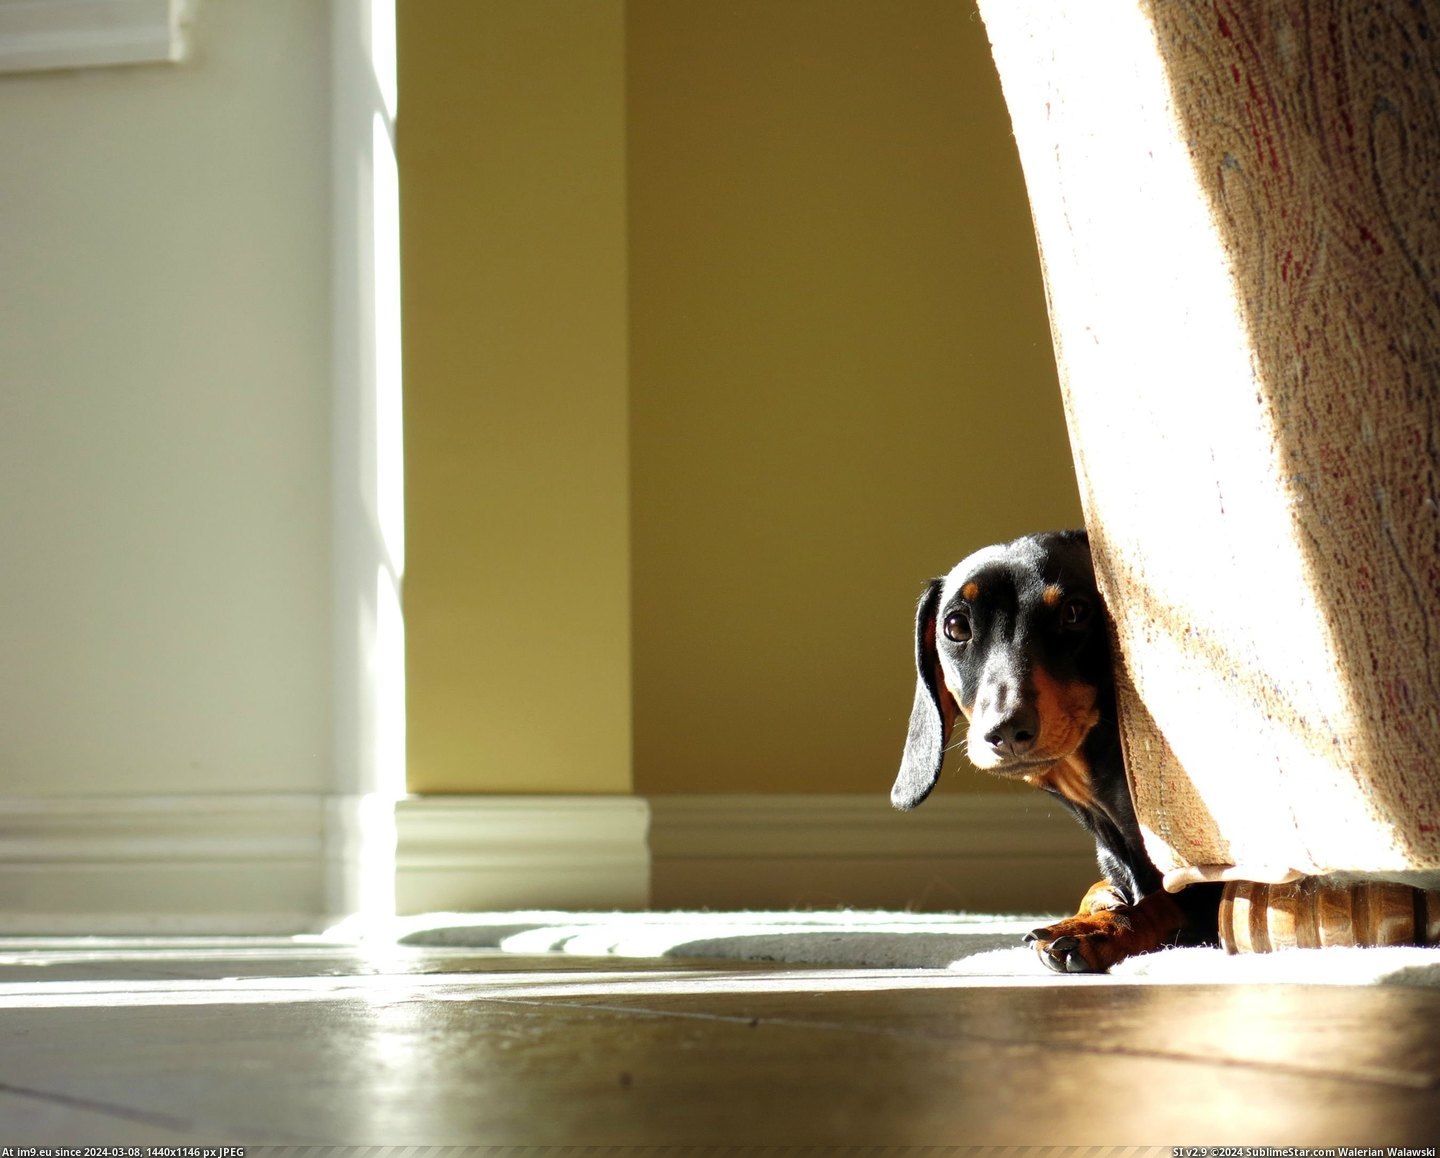 #Puppy #Dachshund #Shy [Aww] My Dachshund puppy is really shy. Pic. (Image of album My r/AWW favs))